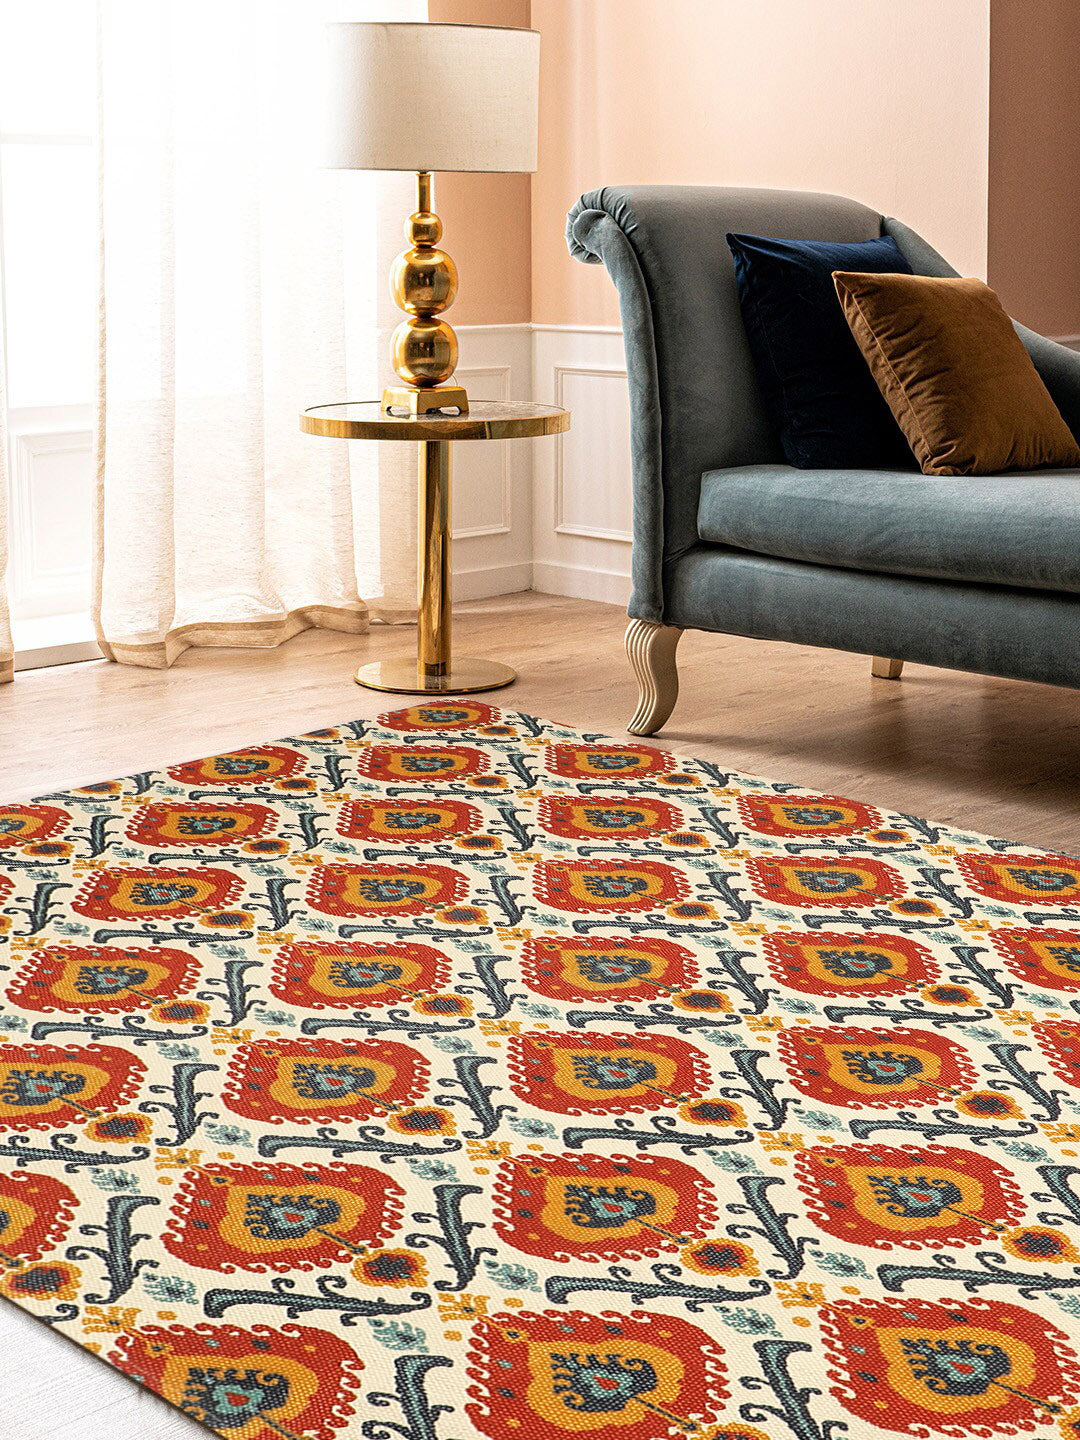 Noor Handloom Carpet on LinkedIn: #carpet #crpet #carpetflor #rugs